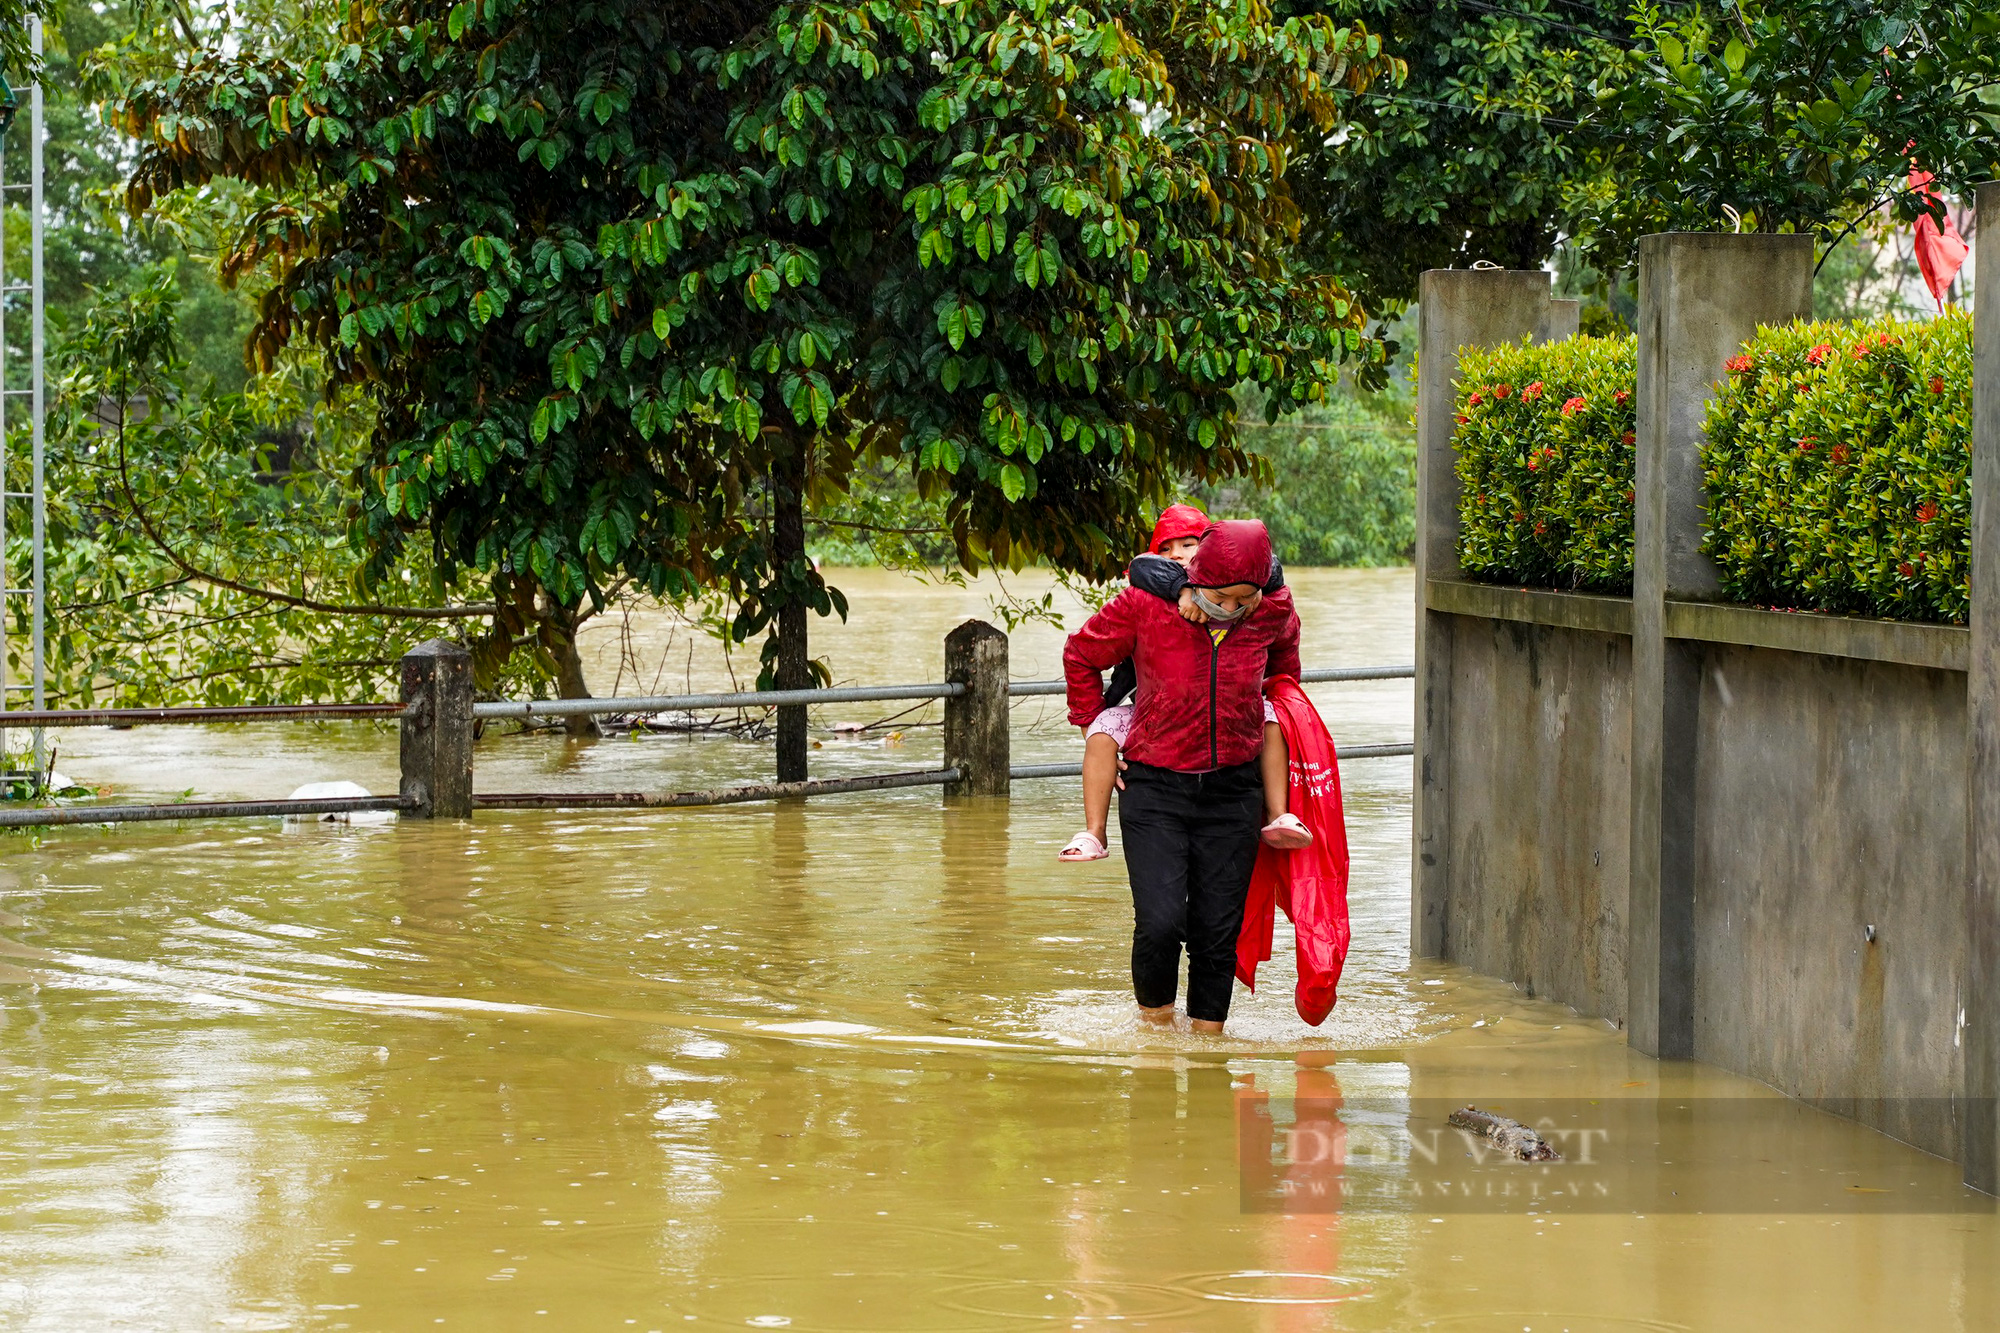 Hà Nội: Nước sông Bùi dâng cao, nhiều nhà dân ở Chương Mỹ bị ngập - Ảnh 2.